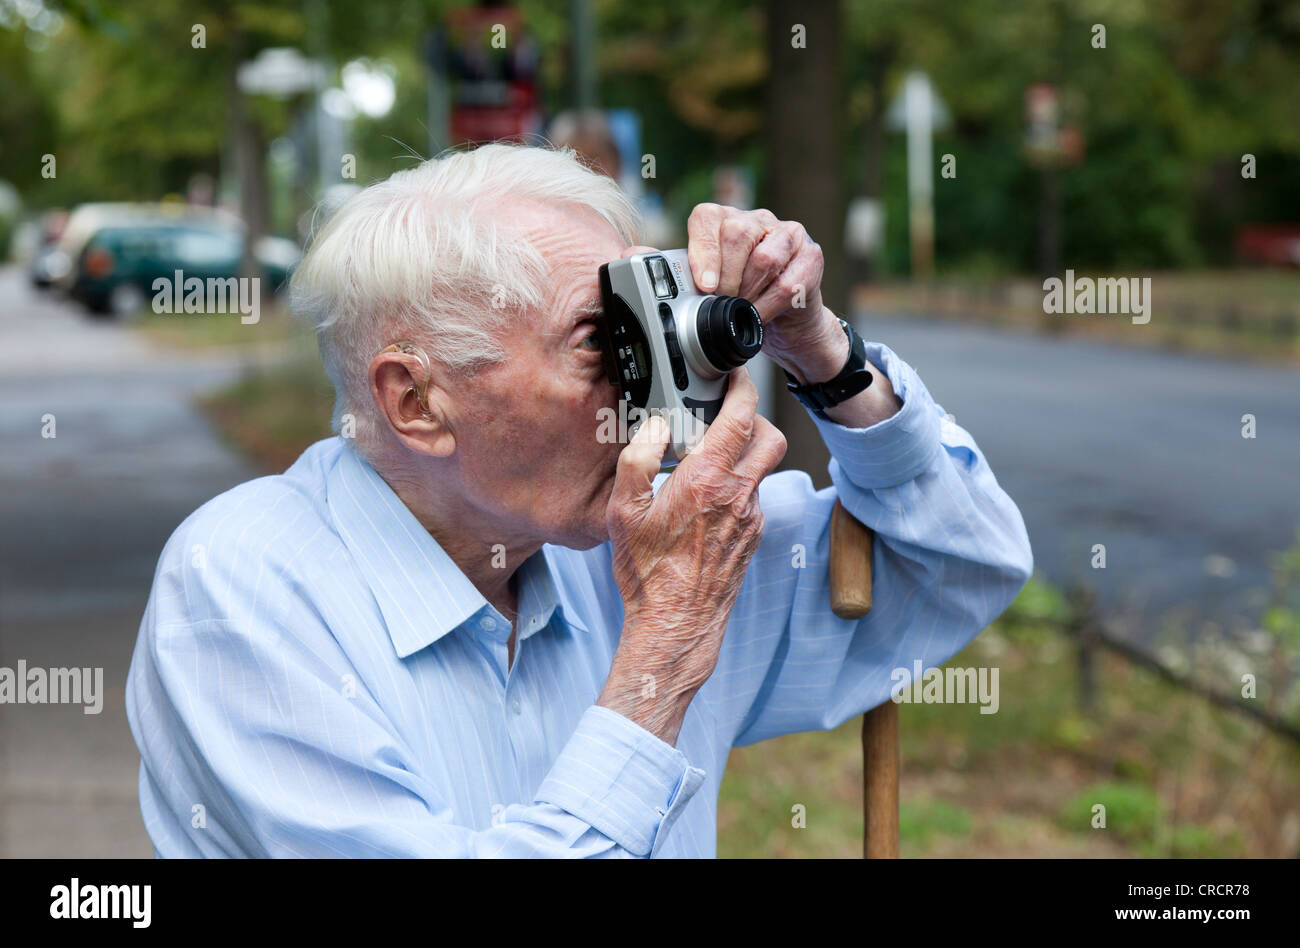 Senior citizen looking through a camera, taking photos Stock Photo